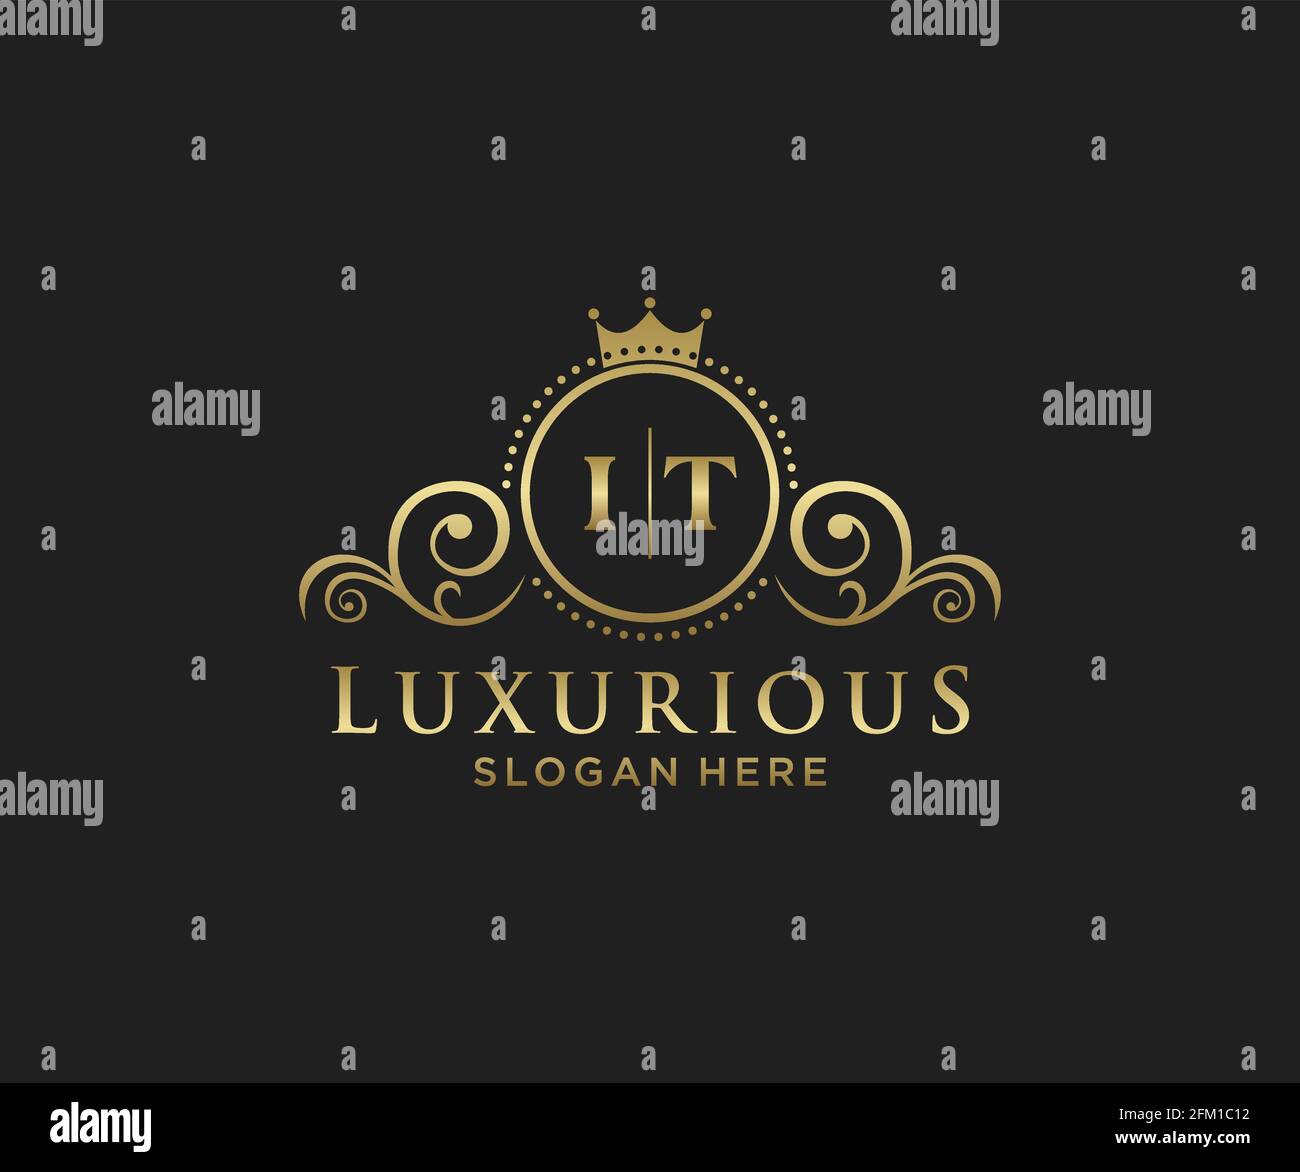 IT Letter Royal Luxury Logo Vorlage in Vektorgrafik für Restaurant, Royalty, Boutique, Cafe, Hotel, Heraldisch, Schmuck, Mode und andere Vektor illustrr Stock Vektor